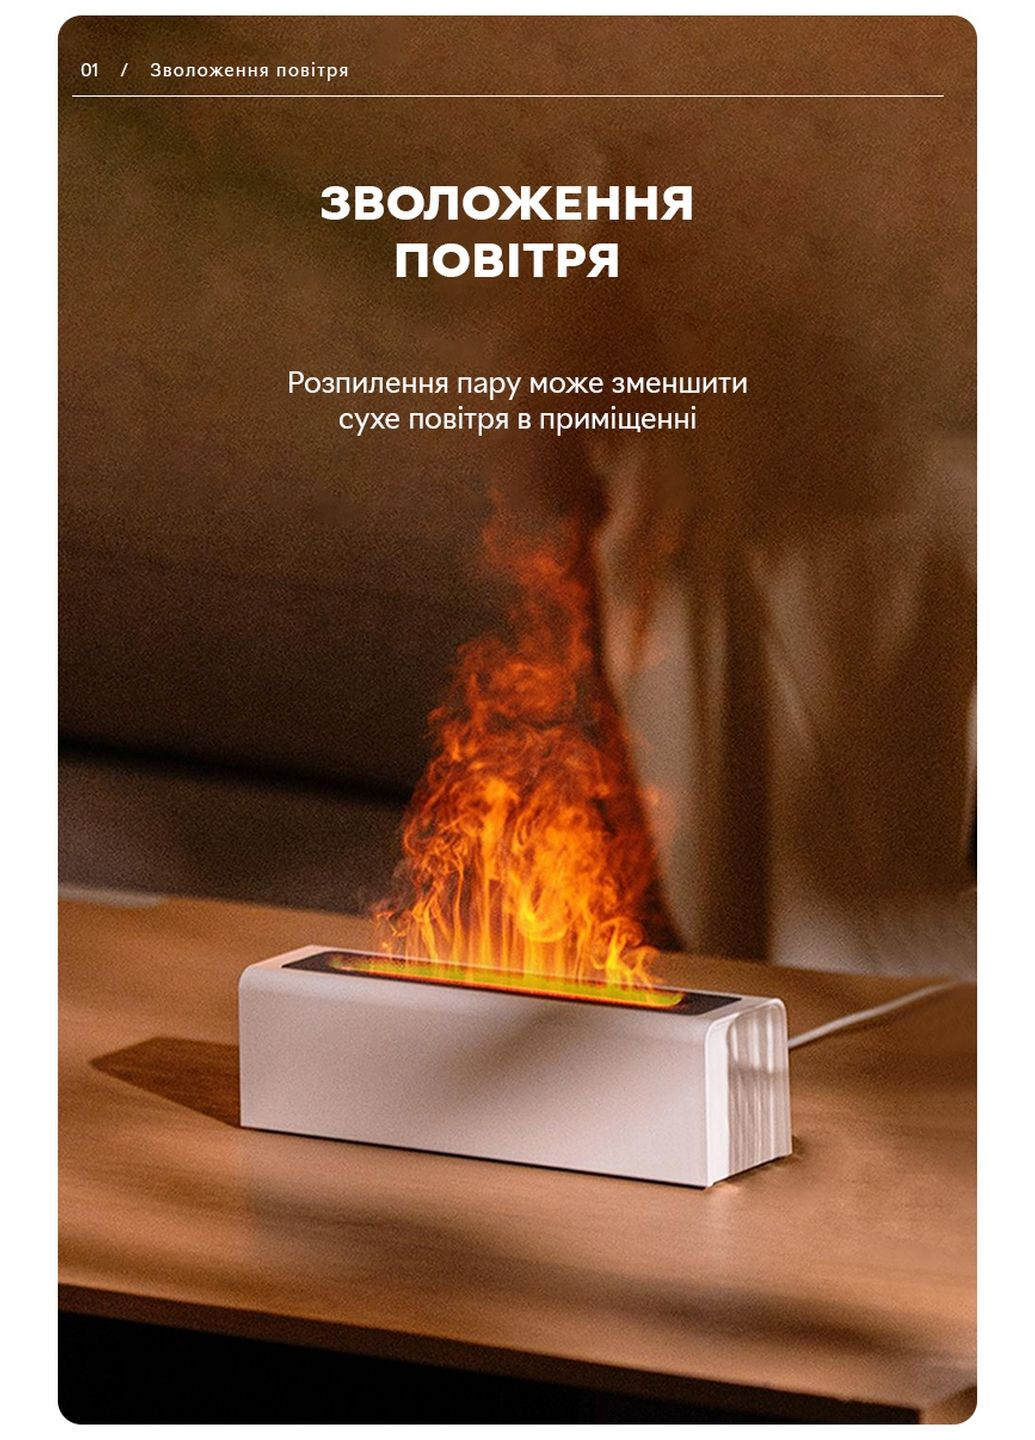 Увлажнитель воздуха портативный DQ-711 Nordic Style Flame V3 аромадифузор электрический, эффект пламени, ПОДАРОК + 2 Арома масла Kinscoter (293416497)